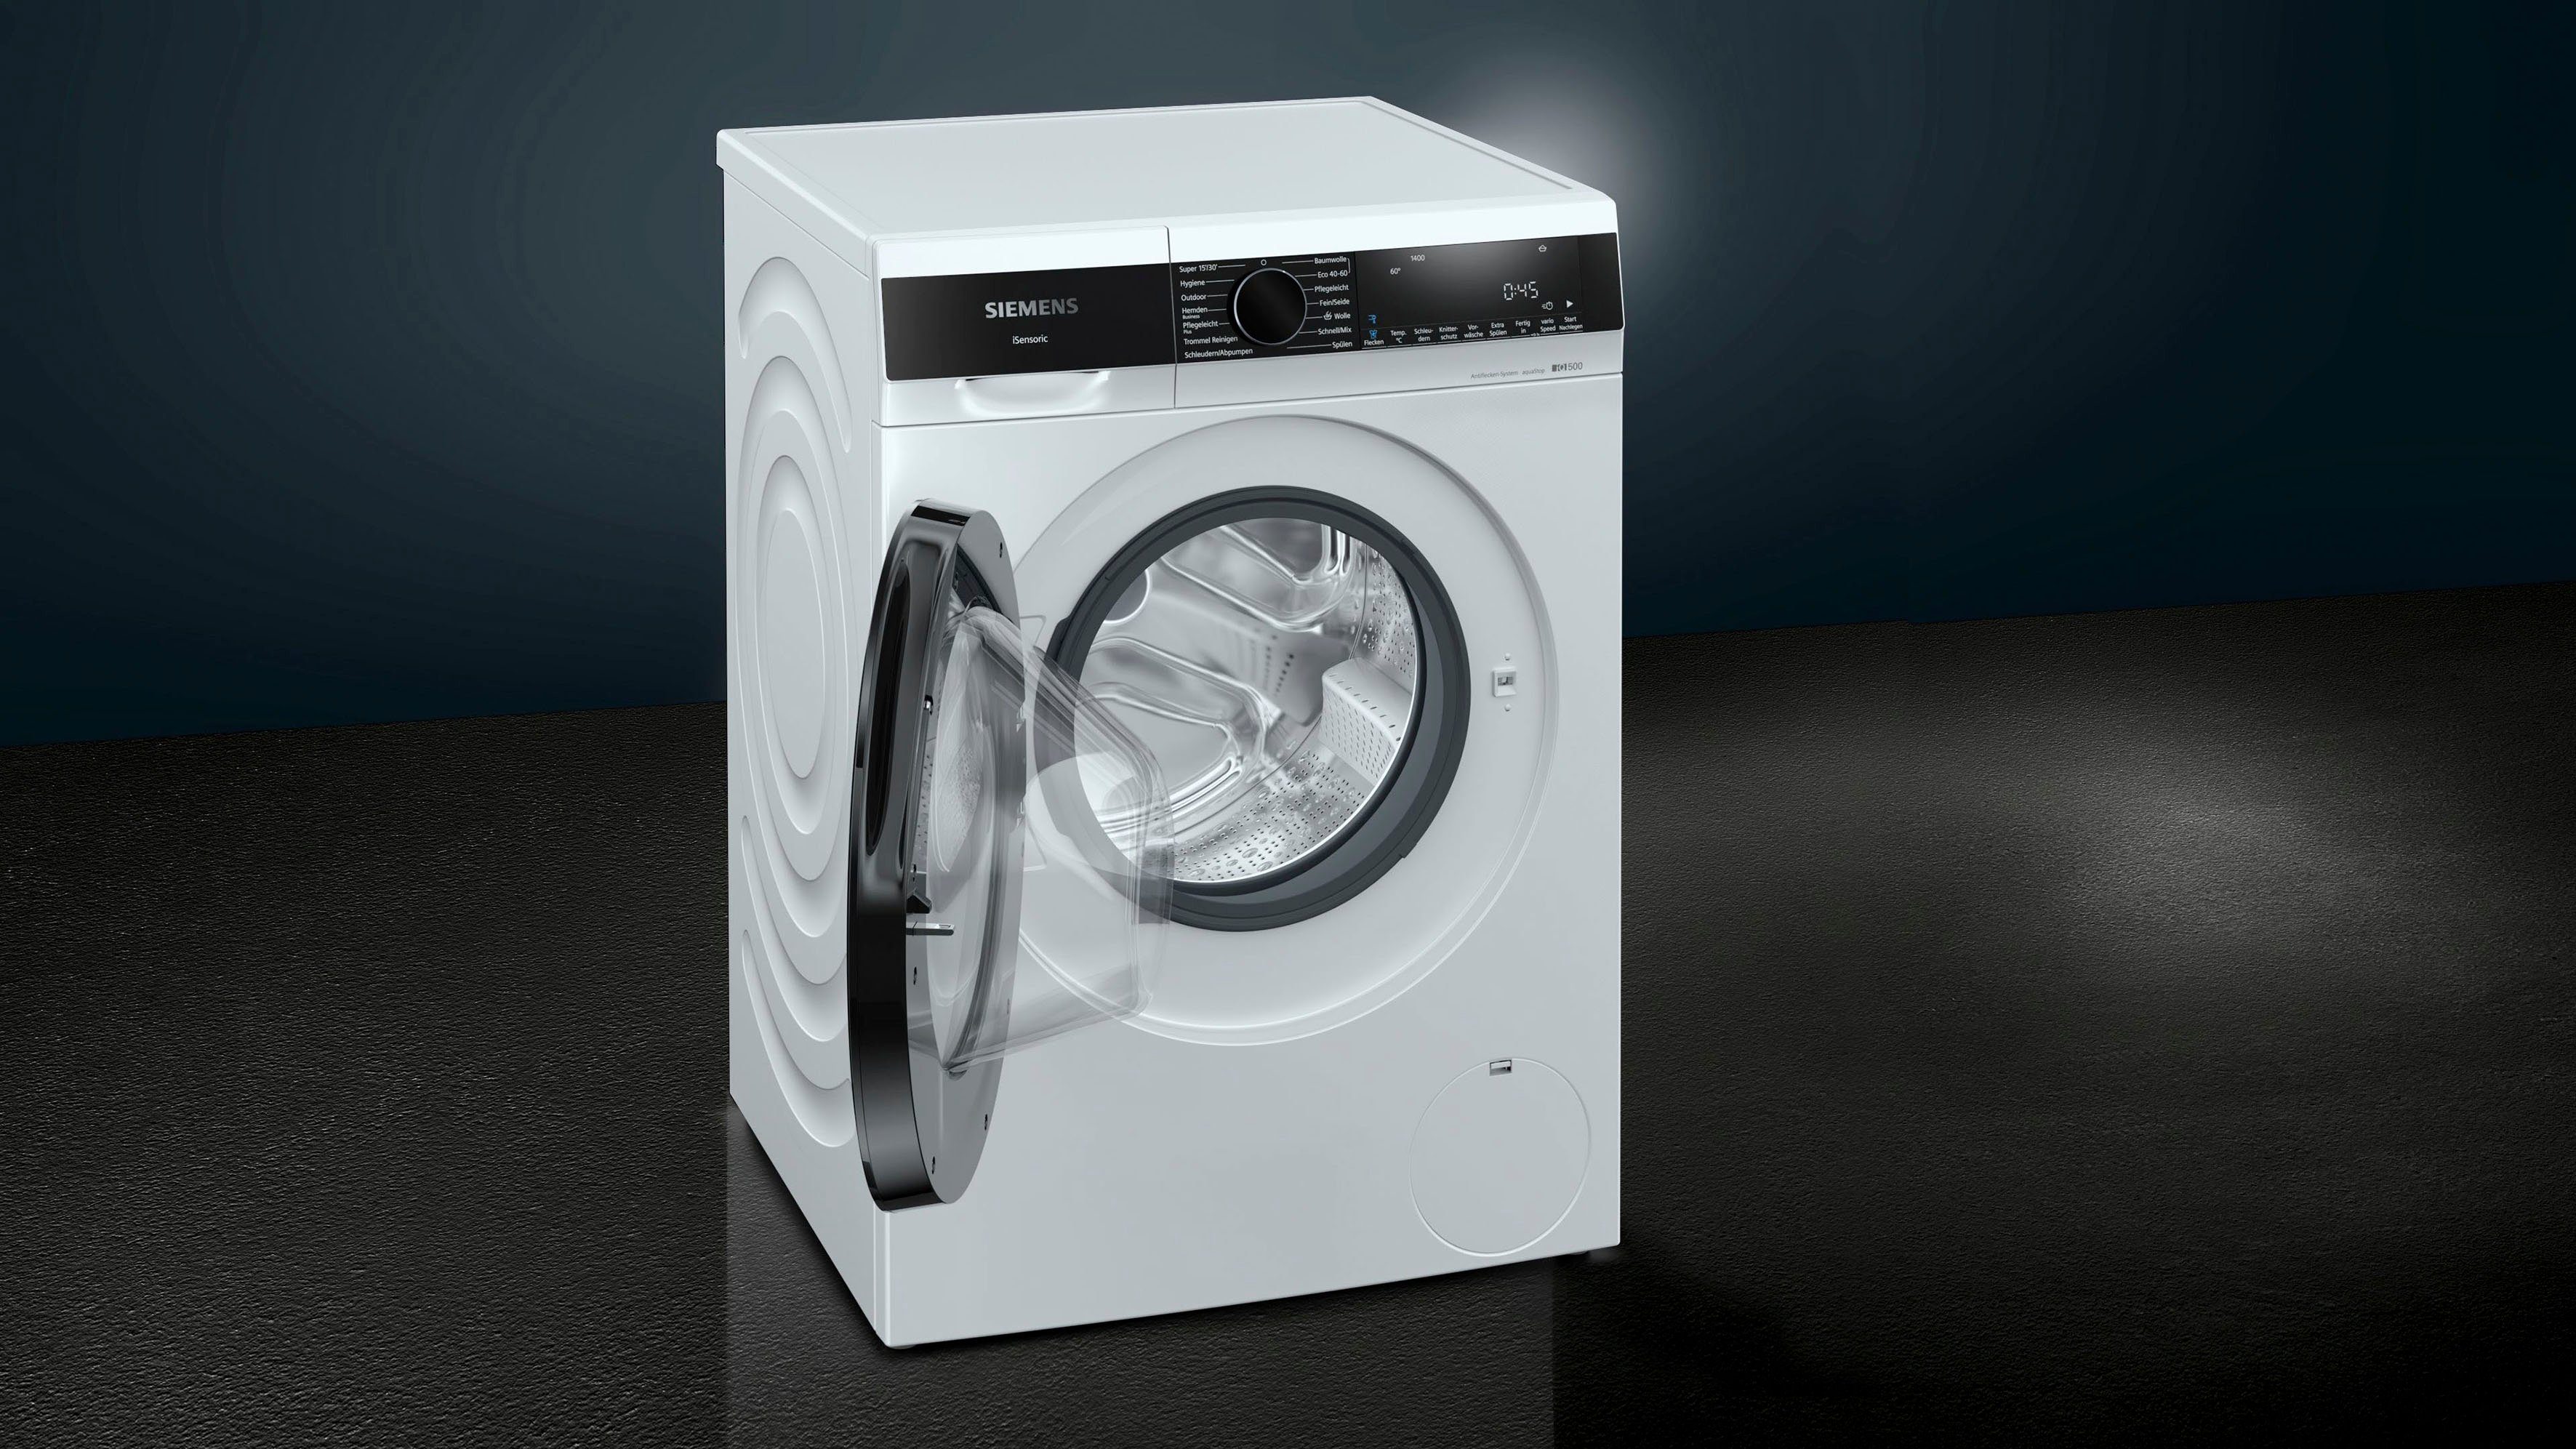 SIEMENS Waschmaschine U/min kg, WG44G2040, iQ500 1400 9